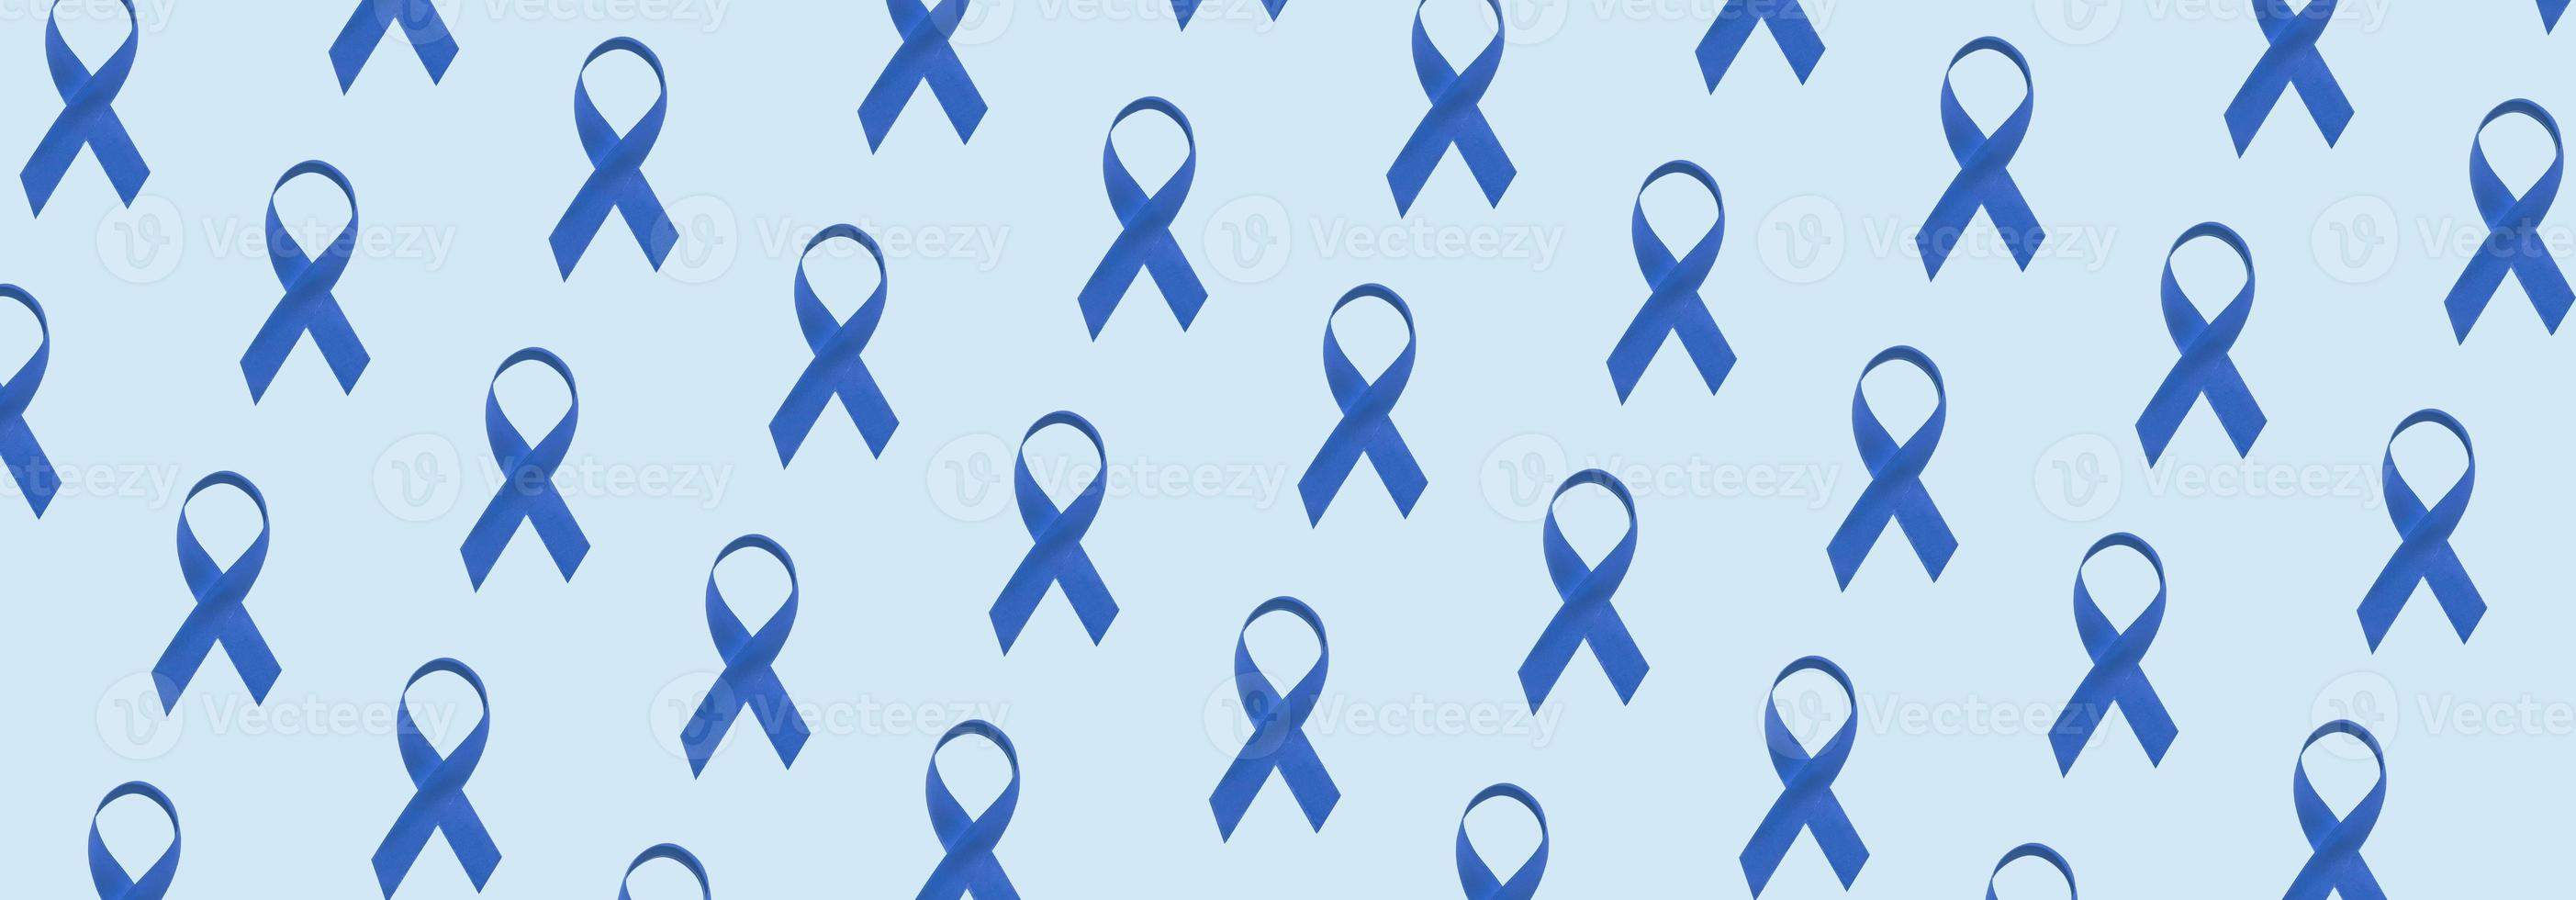 banner com símbolo padrão de fita azul do dia mundial do diabetes foto